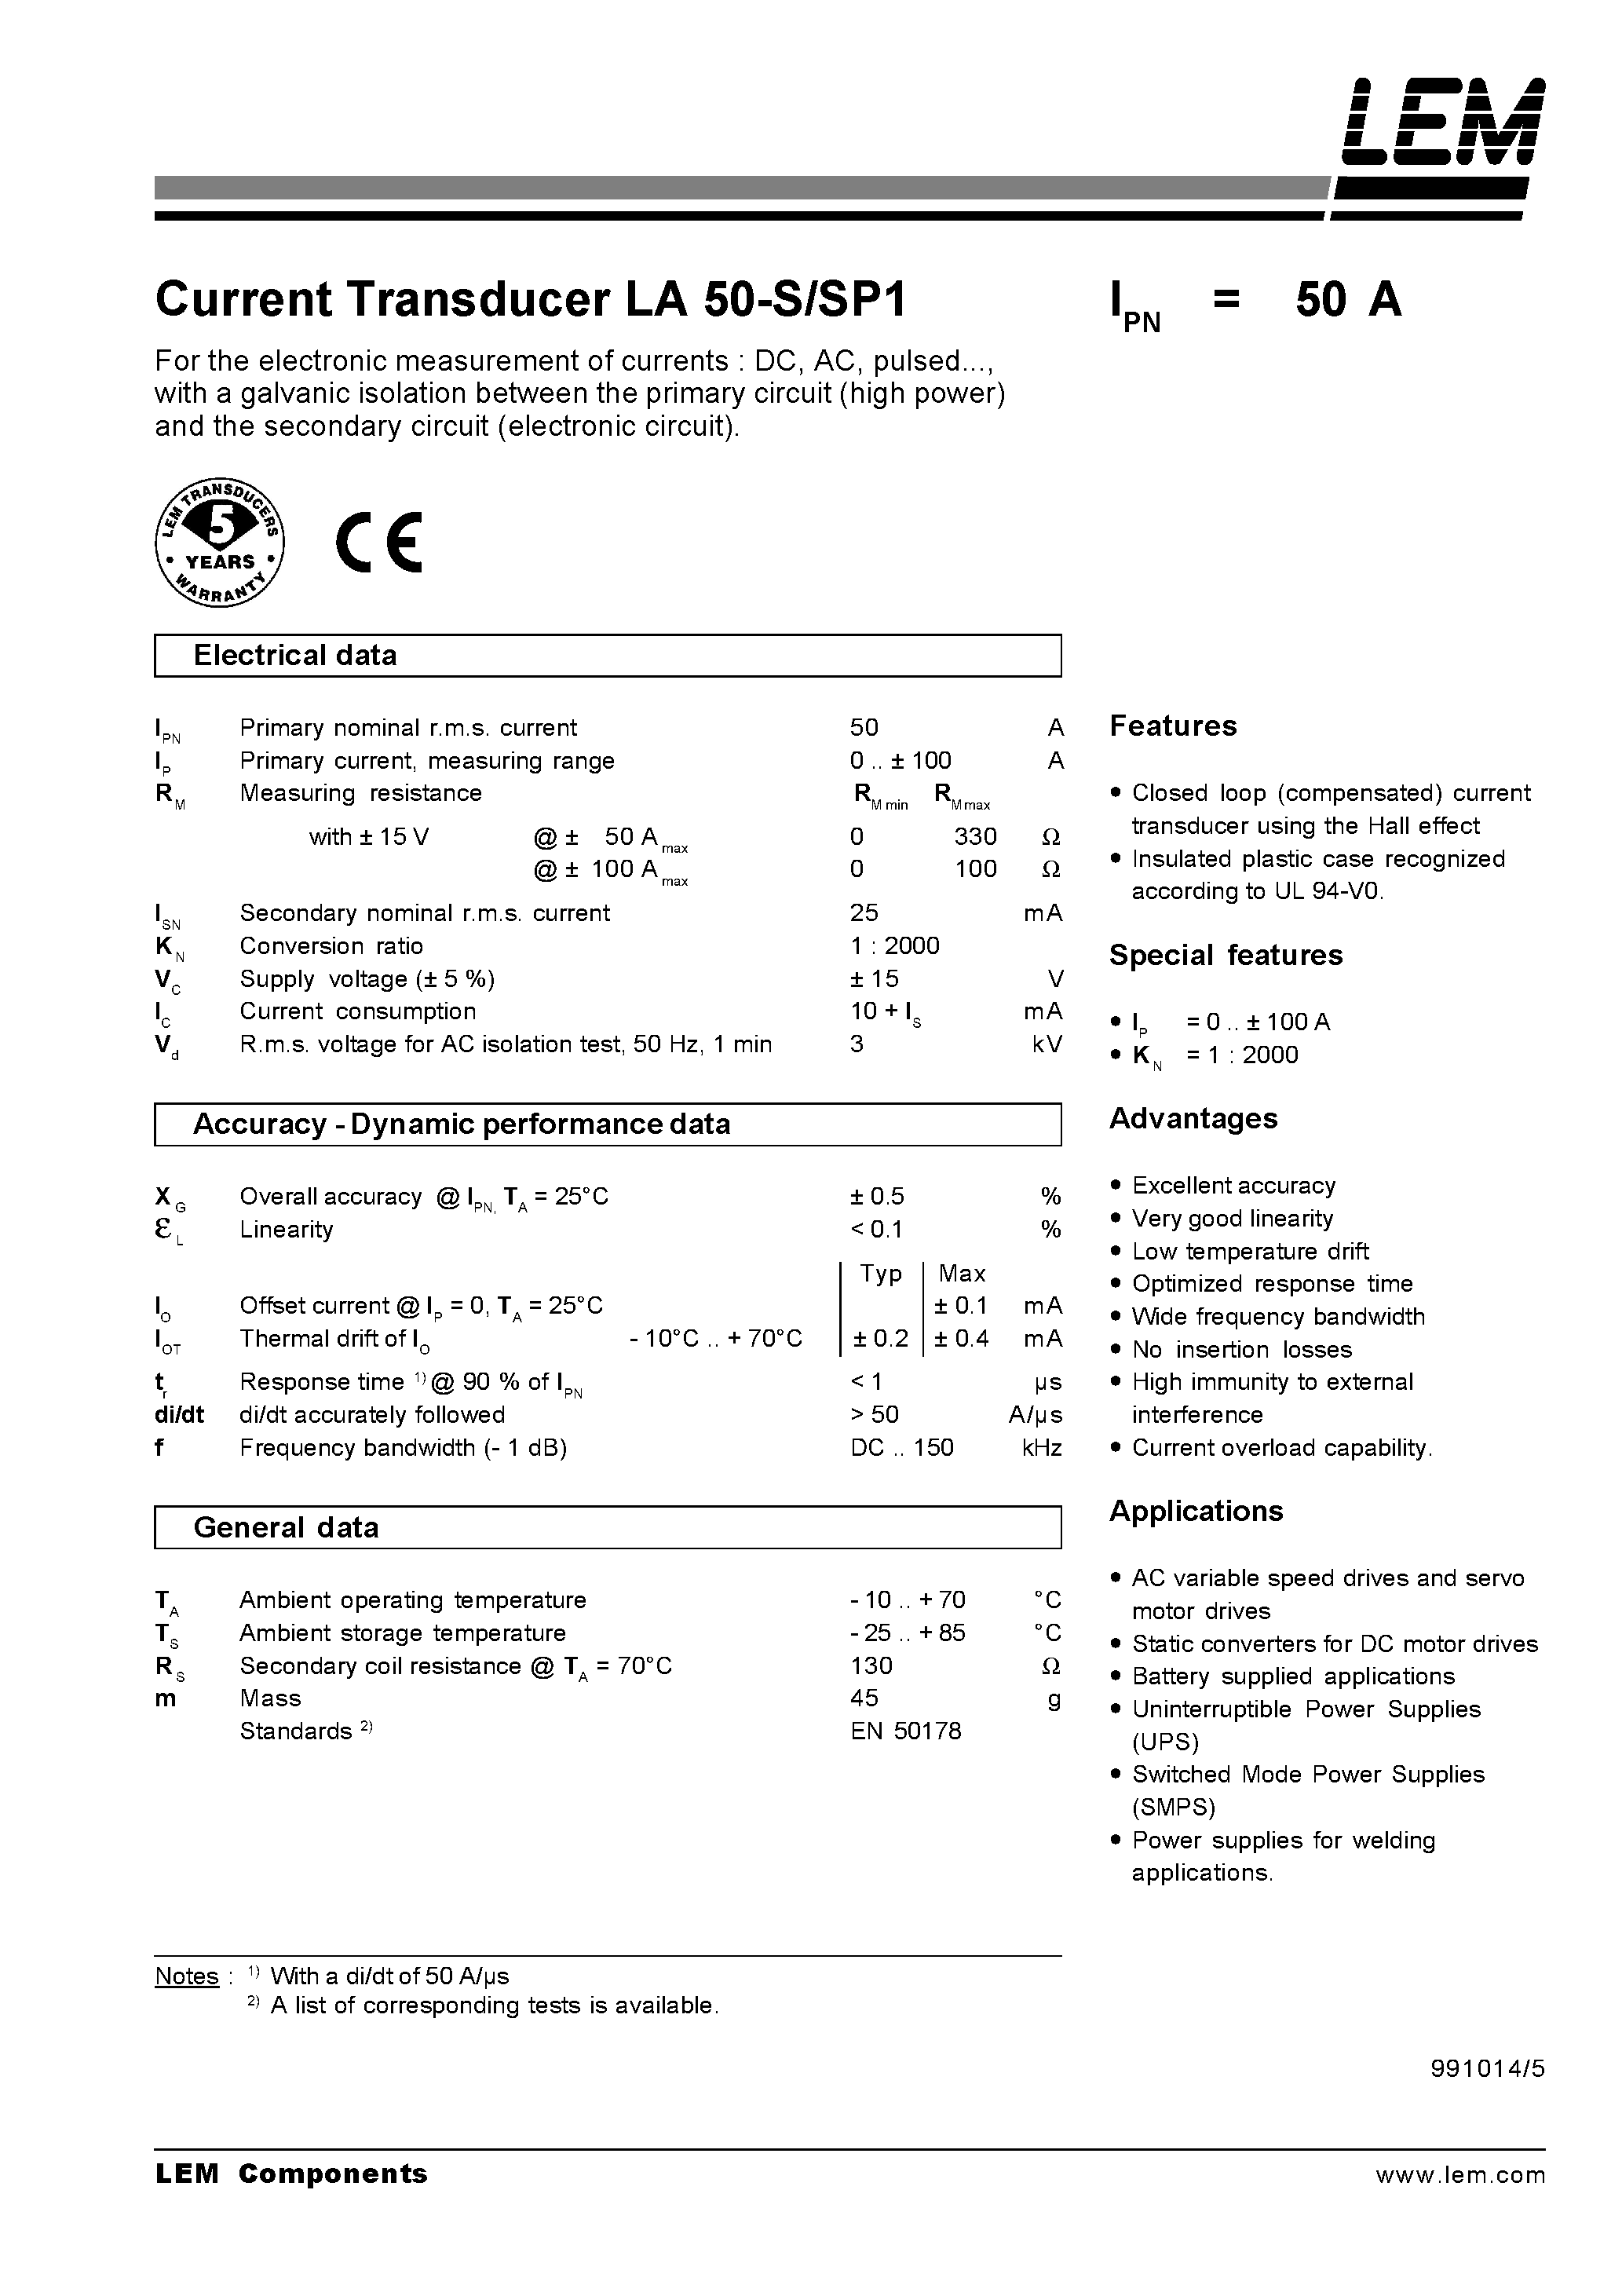 Datasheet LA50-S - Current Transducer LA 50-S/SP1 page 1